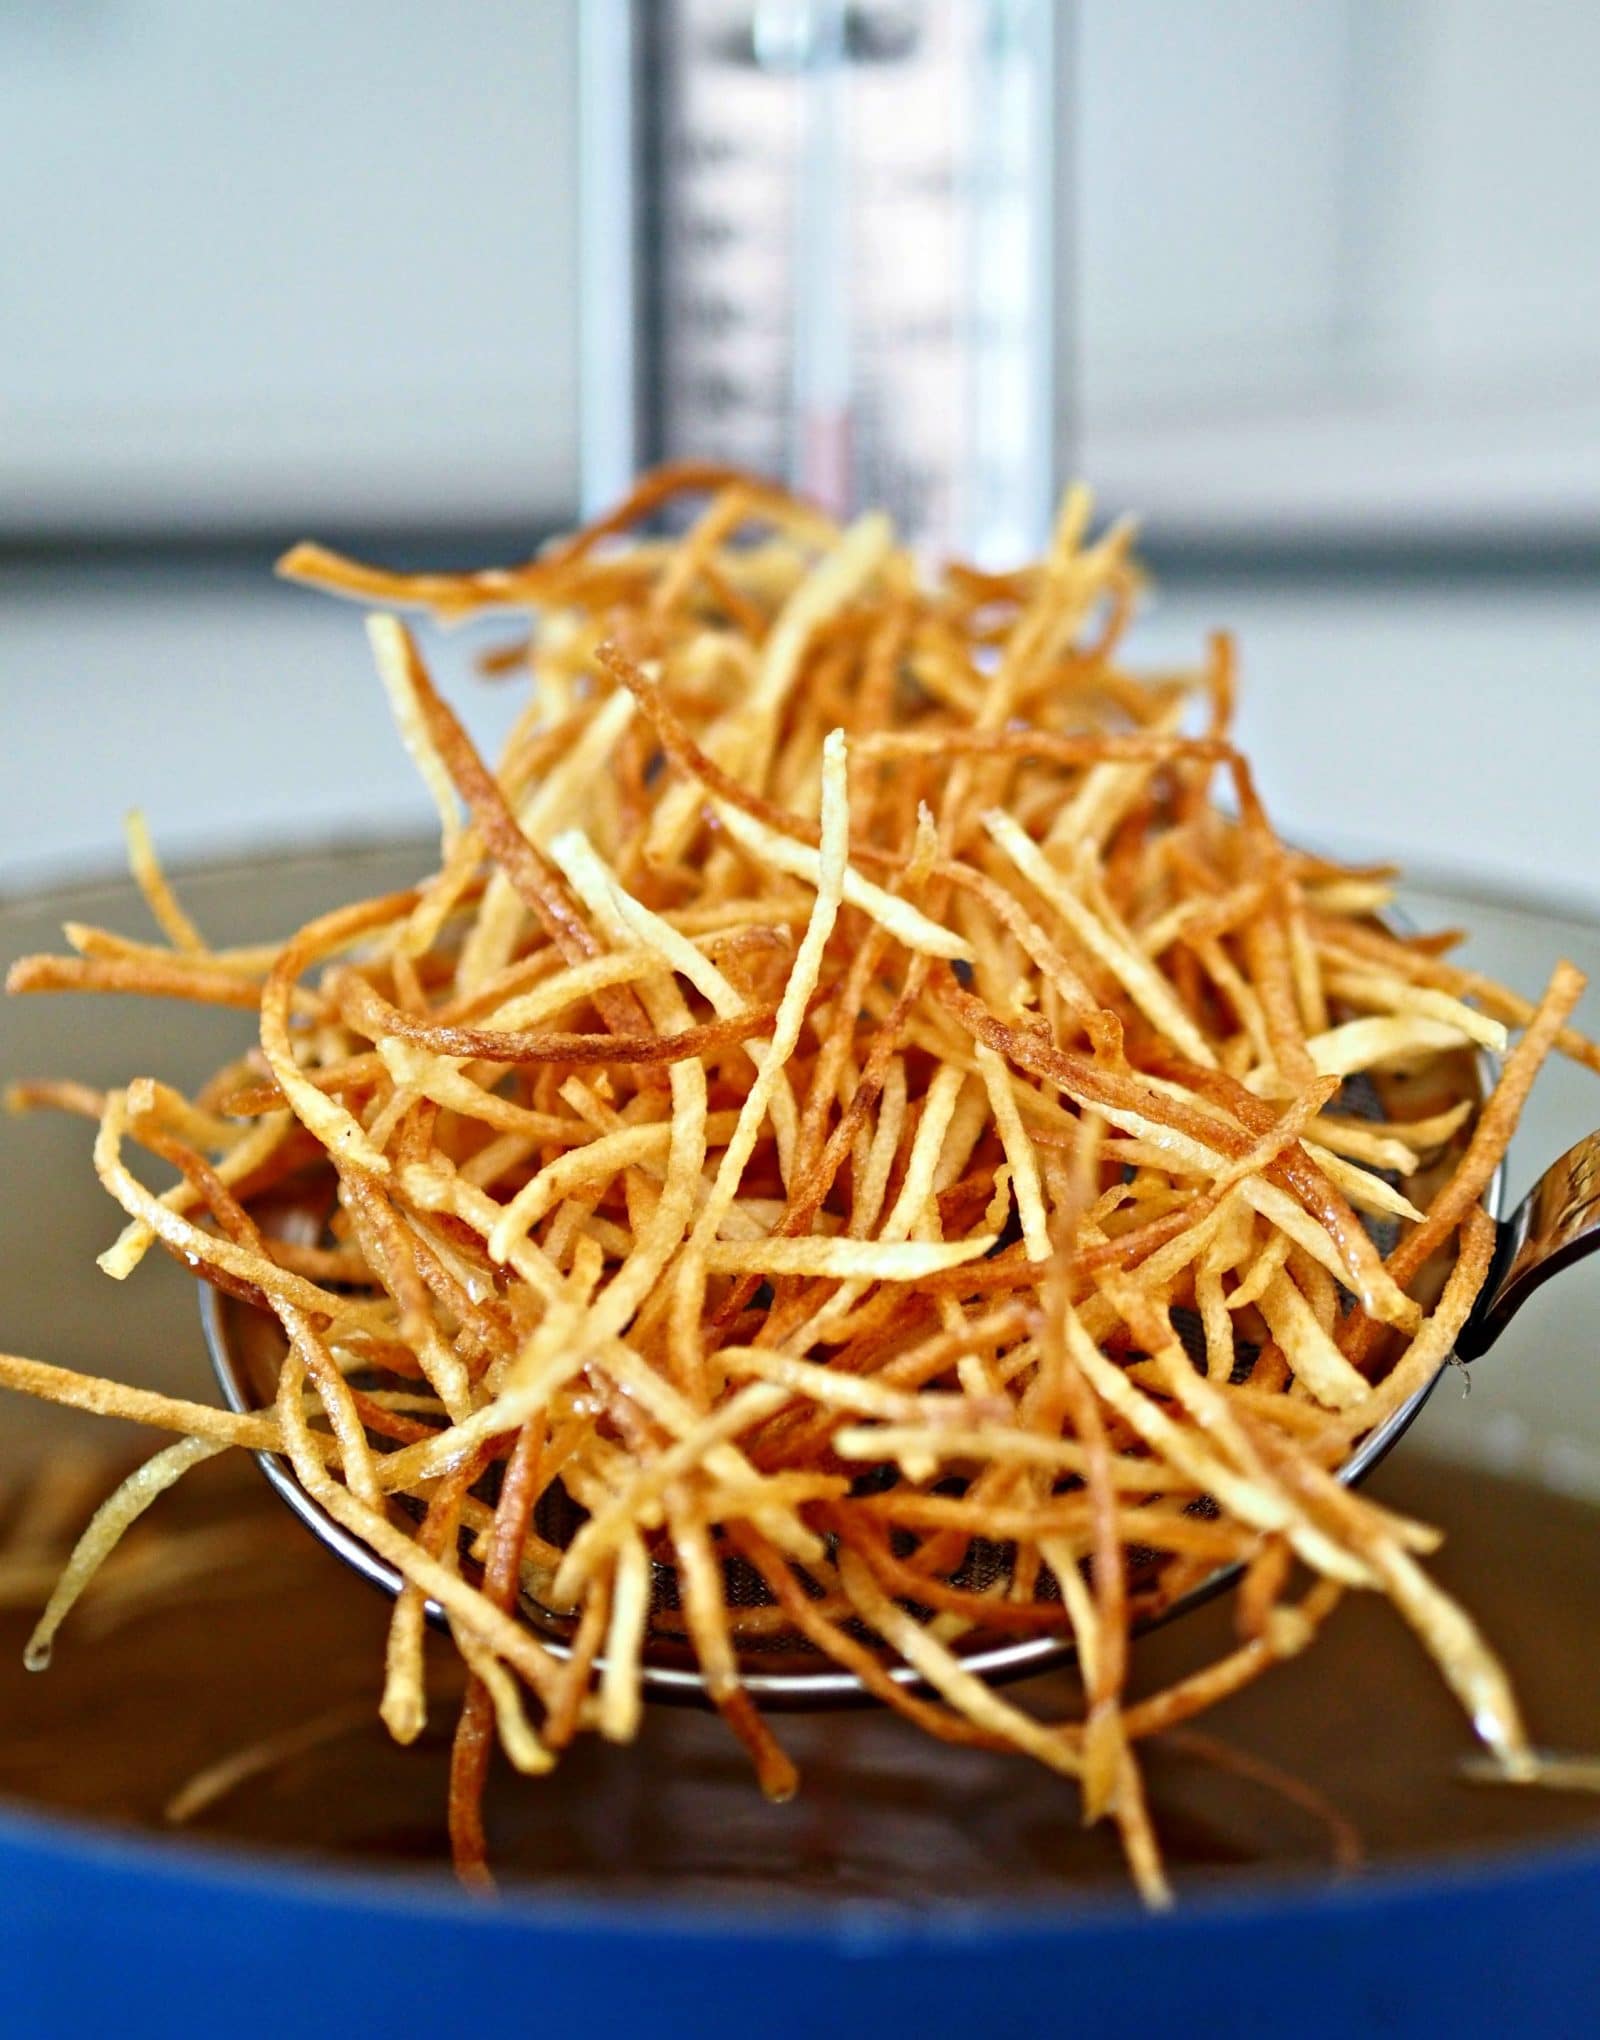 Patatas crujientes en tiras. Patatas fritas hasta que se doran y se sazonan perfectamente. Sencillas, deliciosas y adictivas. Simplemente saciado